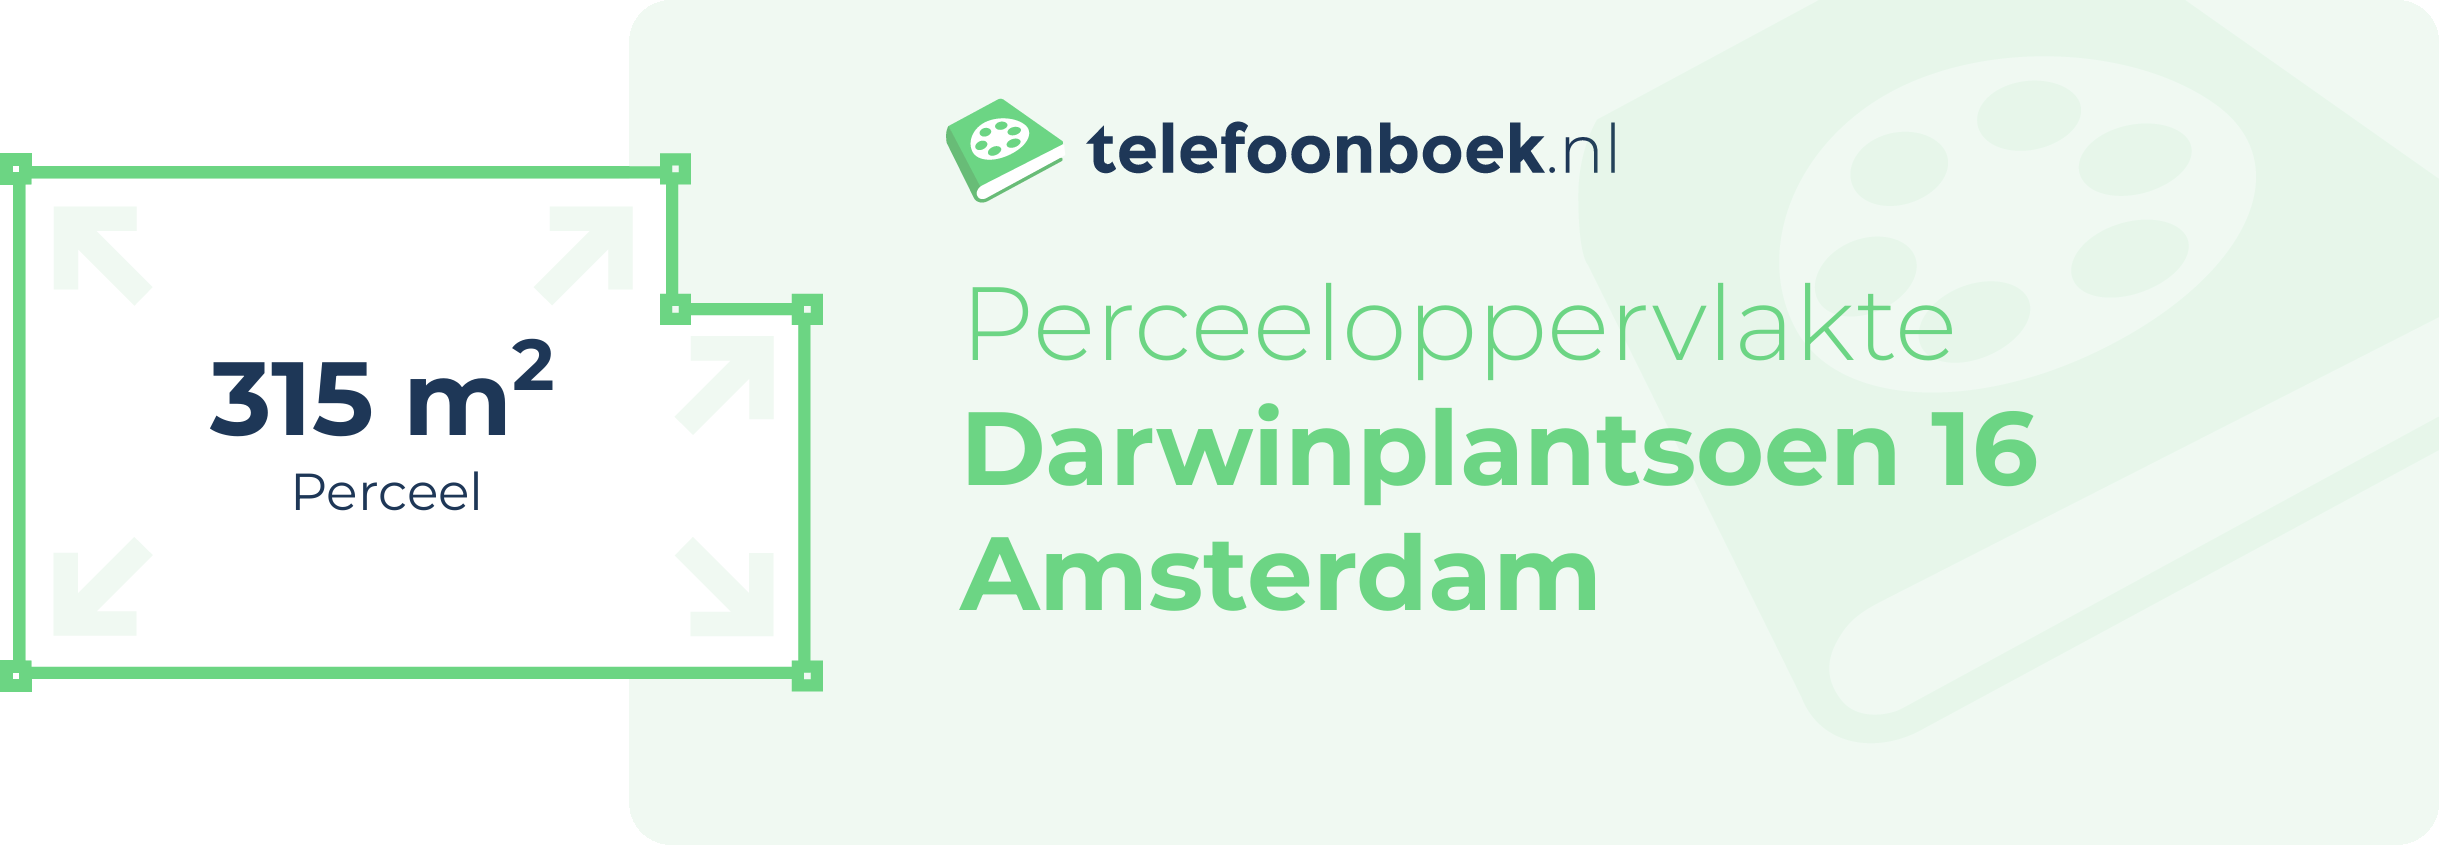 Perceeloppervlakte Darwinplantsoen 16 Amsterdam